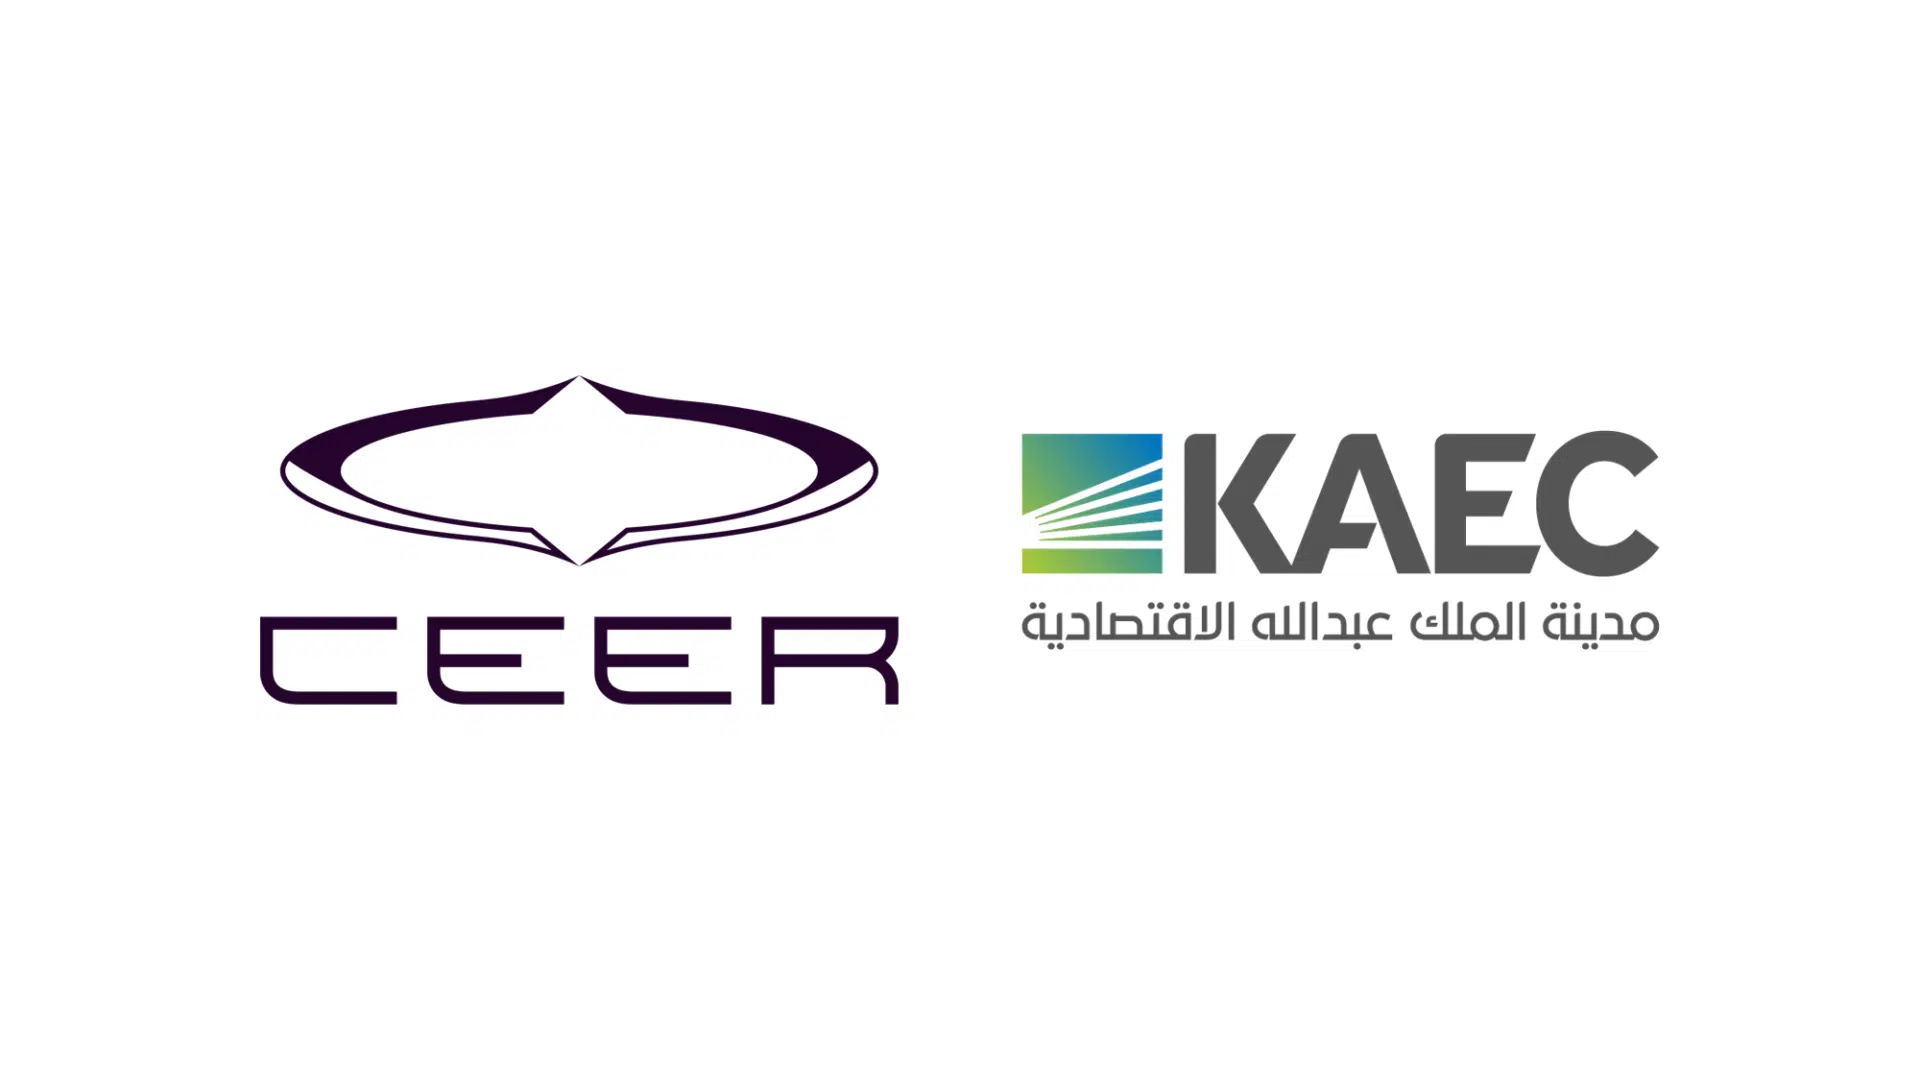 KAEC_CEER-EN-logos_only-1920x1080.png.webp